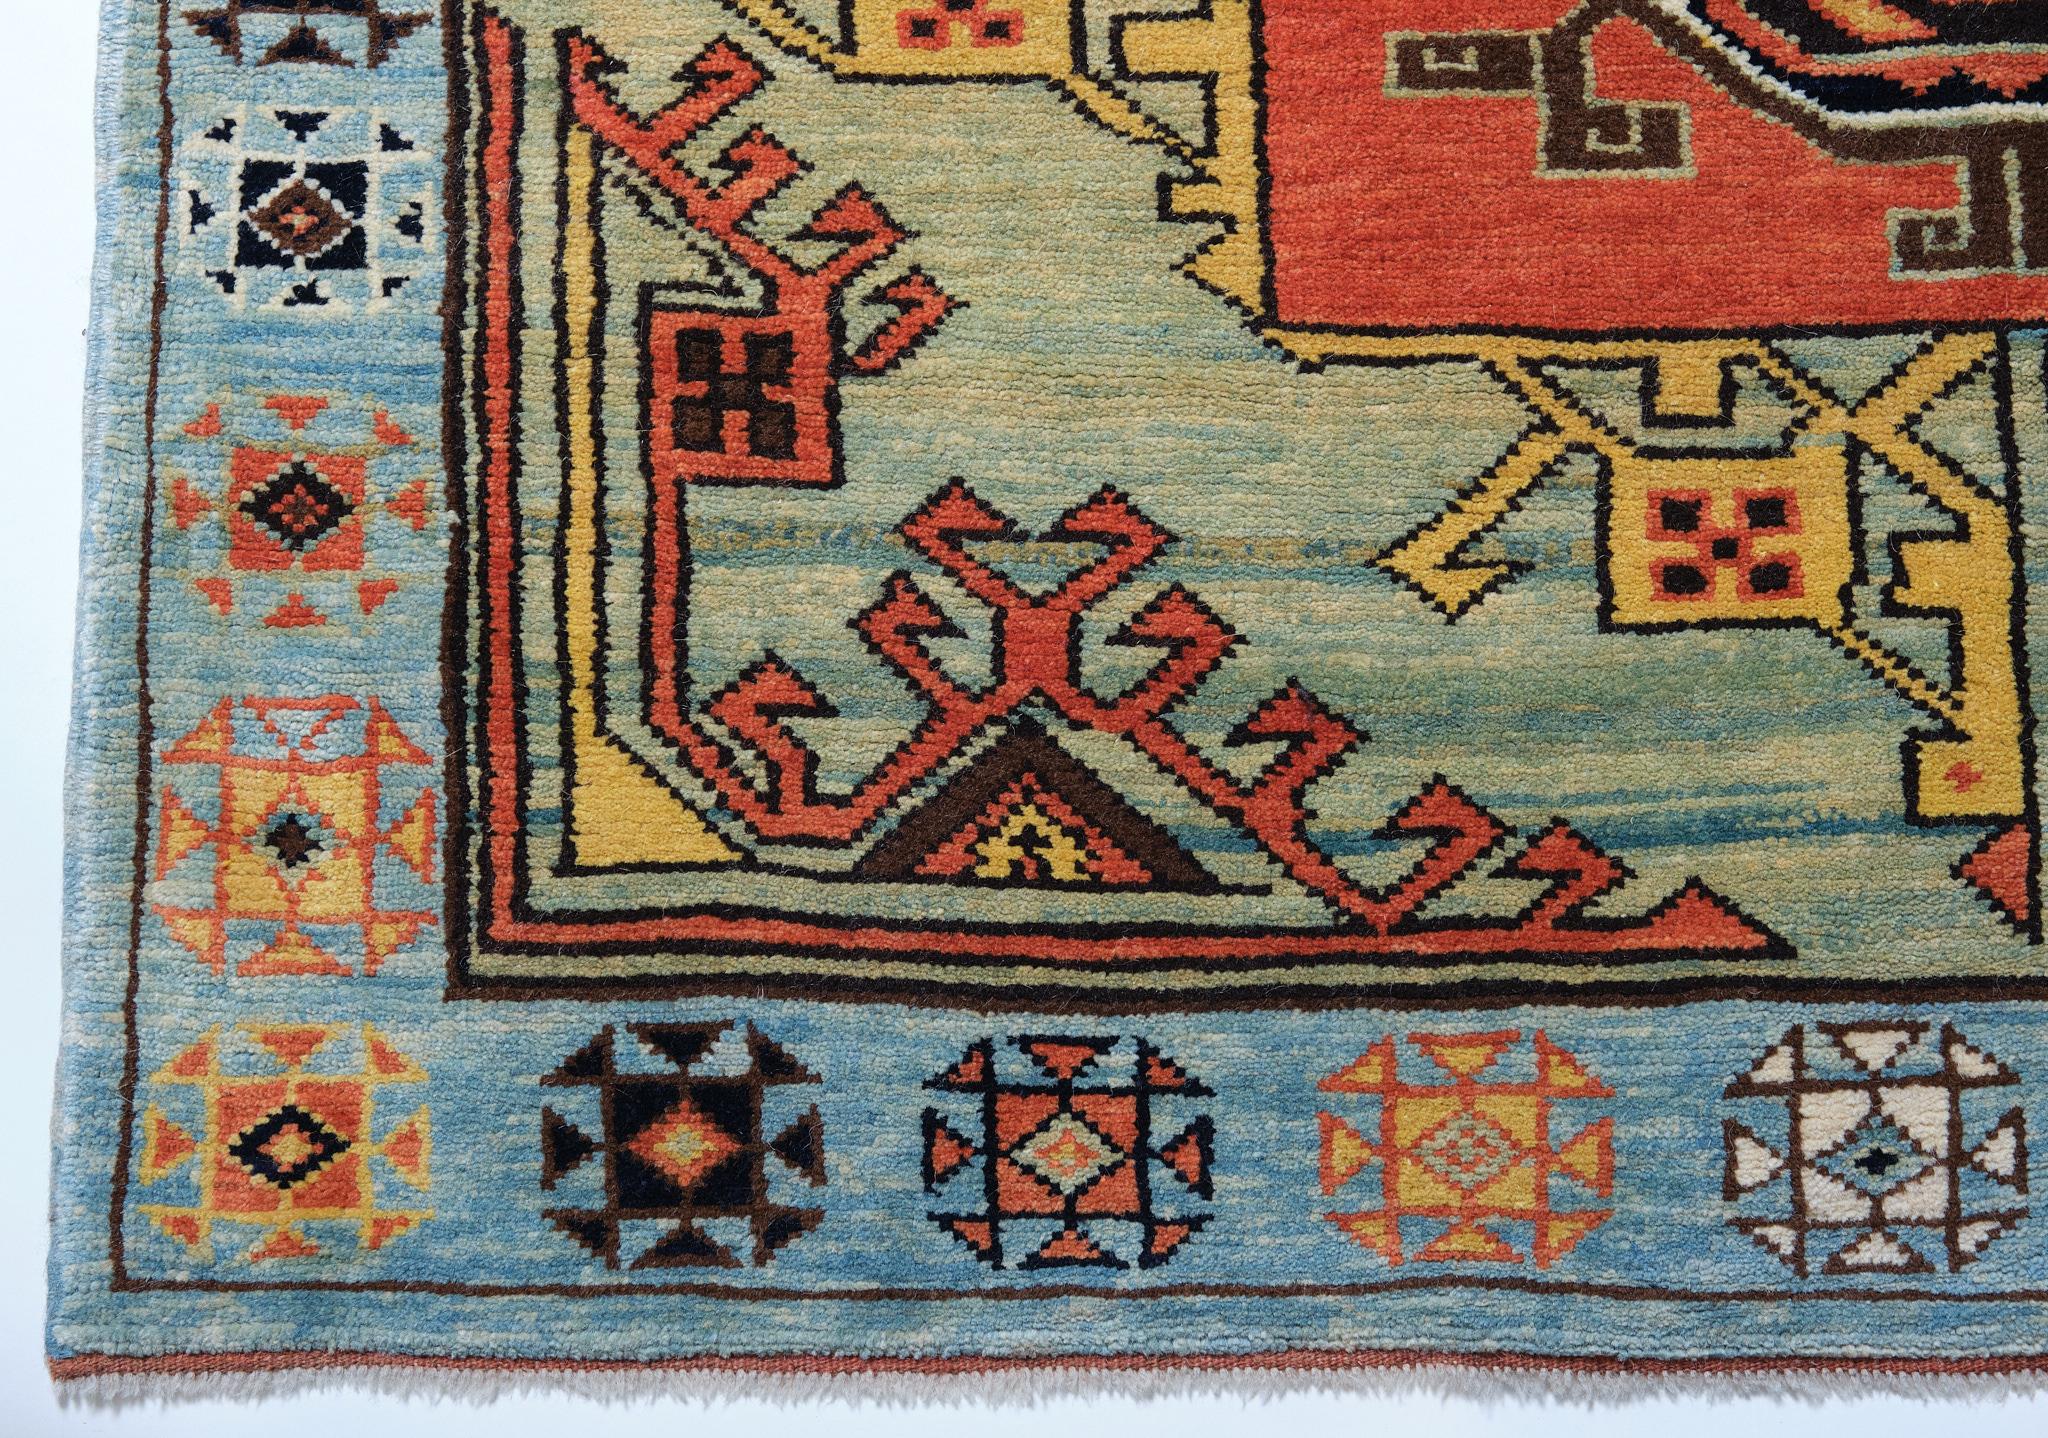 Die Quelle der Teppiche stammt aus dem Buch Orient Star - A Carpet Collection, E. Heinrich Kirchheim, Hali Publications Ltd, 1993 nr.135. Dieser außergewöhnlich elegante, große Teppich mit Medaillonmuster aus dem 17. Jahrhundert stammt aus der